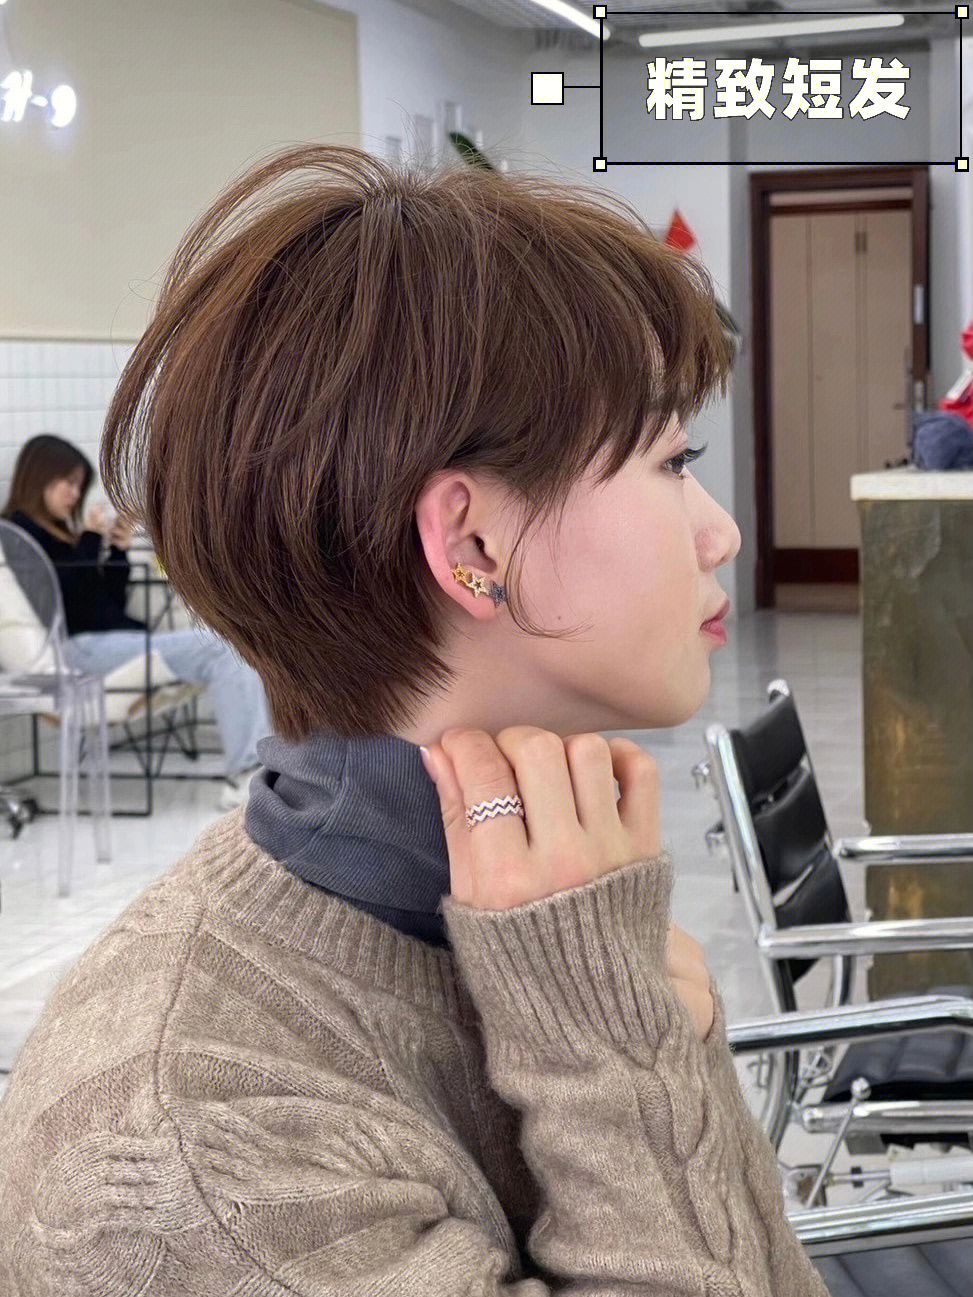 2021超短发日系短发韩系短现在流行的女生超短发发型,第一爆款应该是